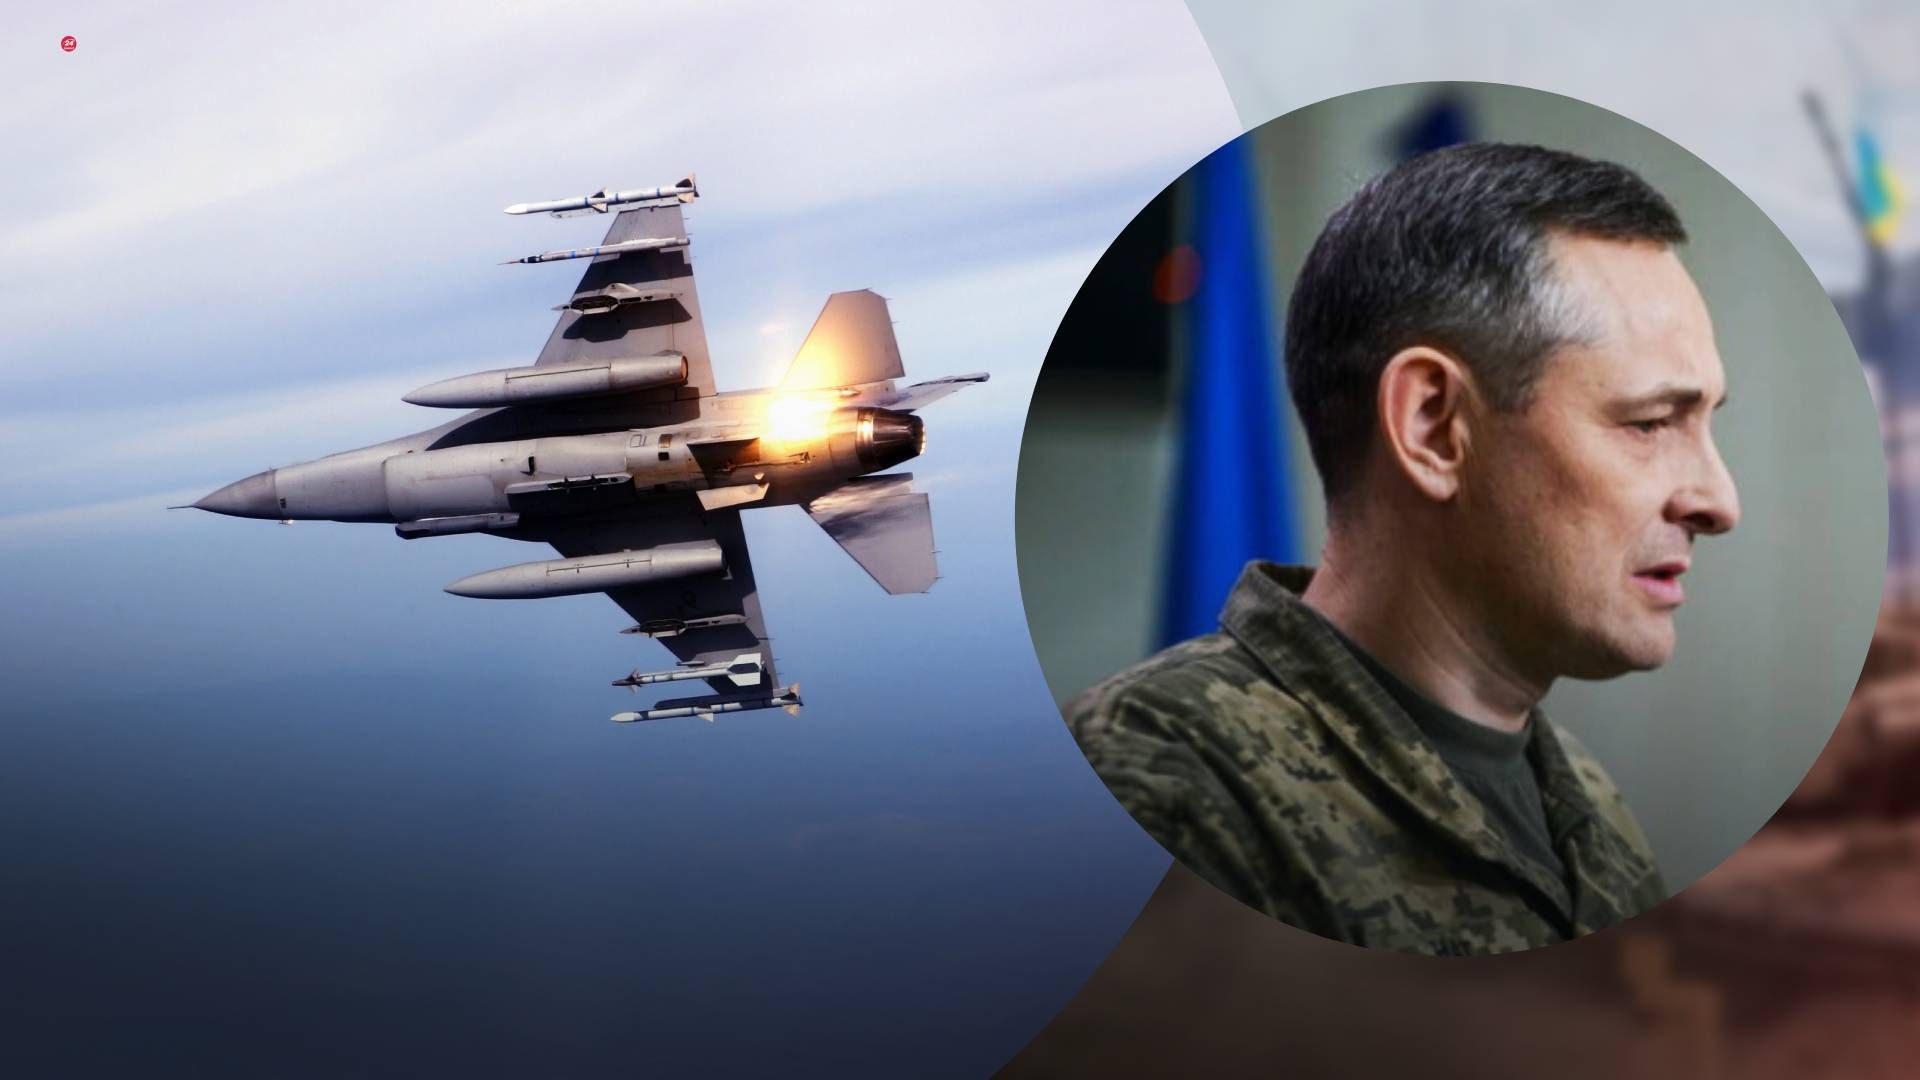 Відео з польотами українців на F-16 – фейк